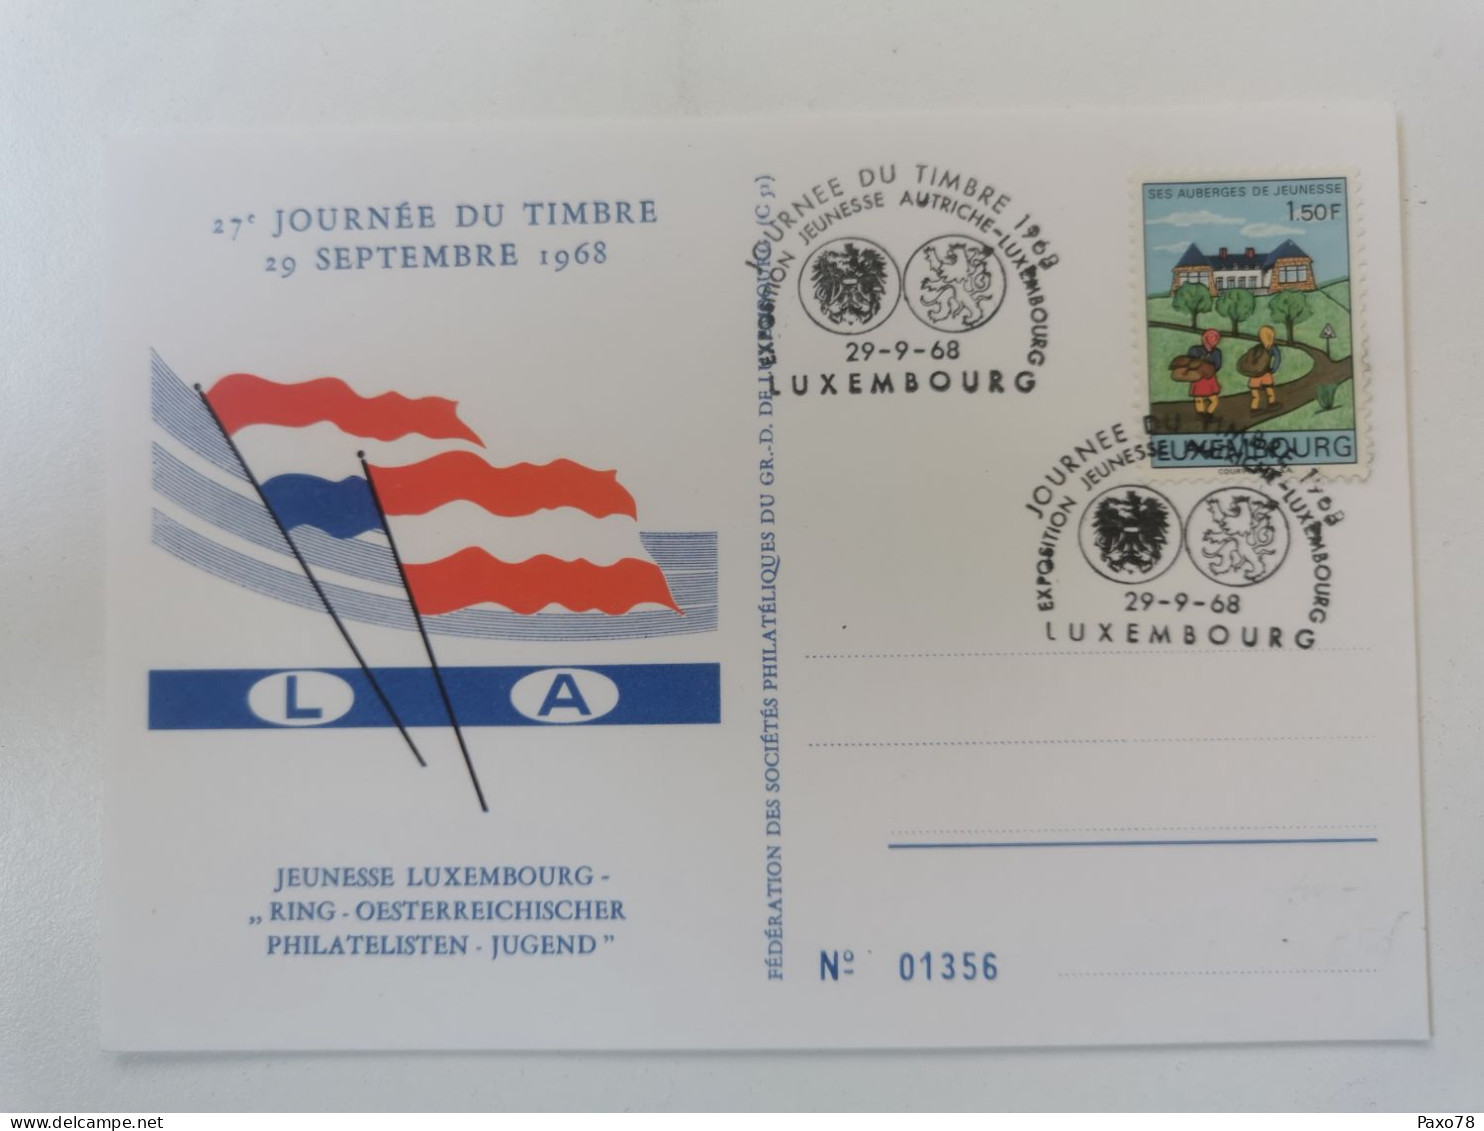 27e Journée Du Timbre, Jeunesse Luxembourg 1968 - Commemoration Cards